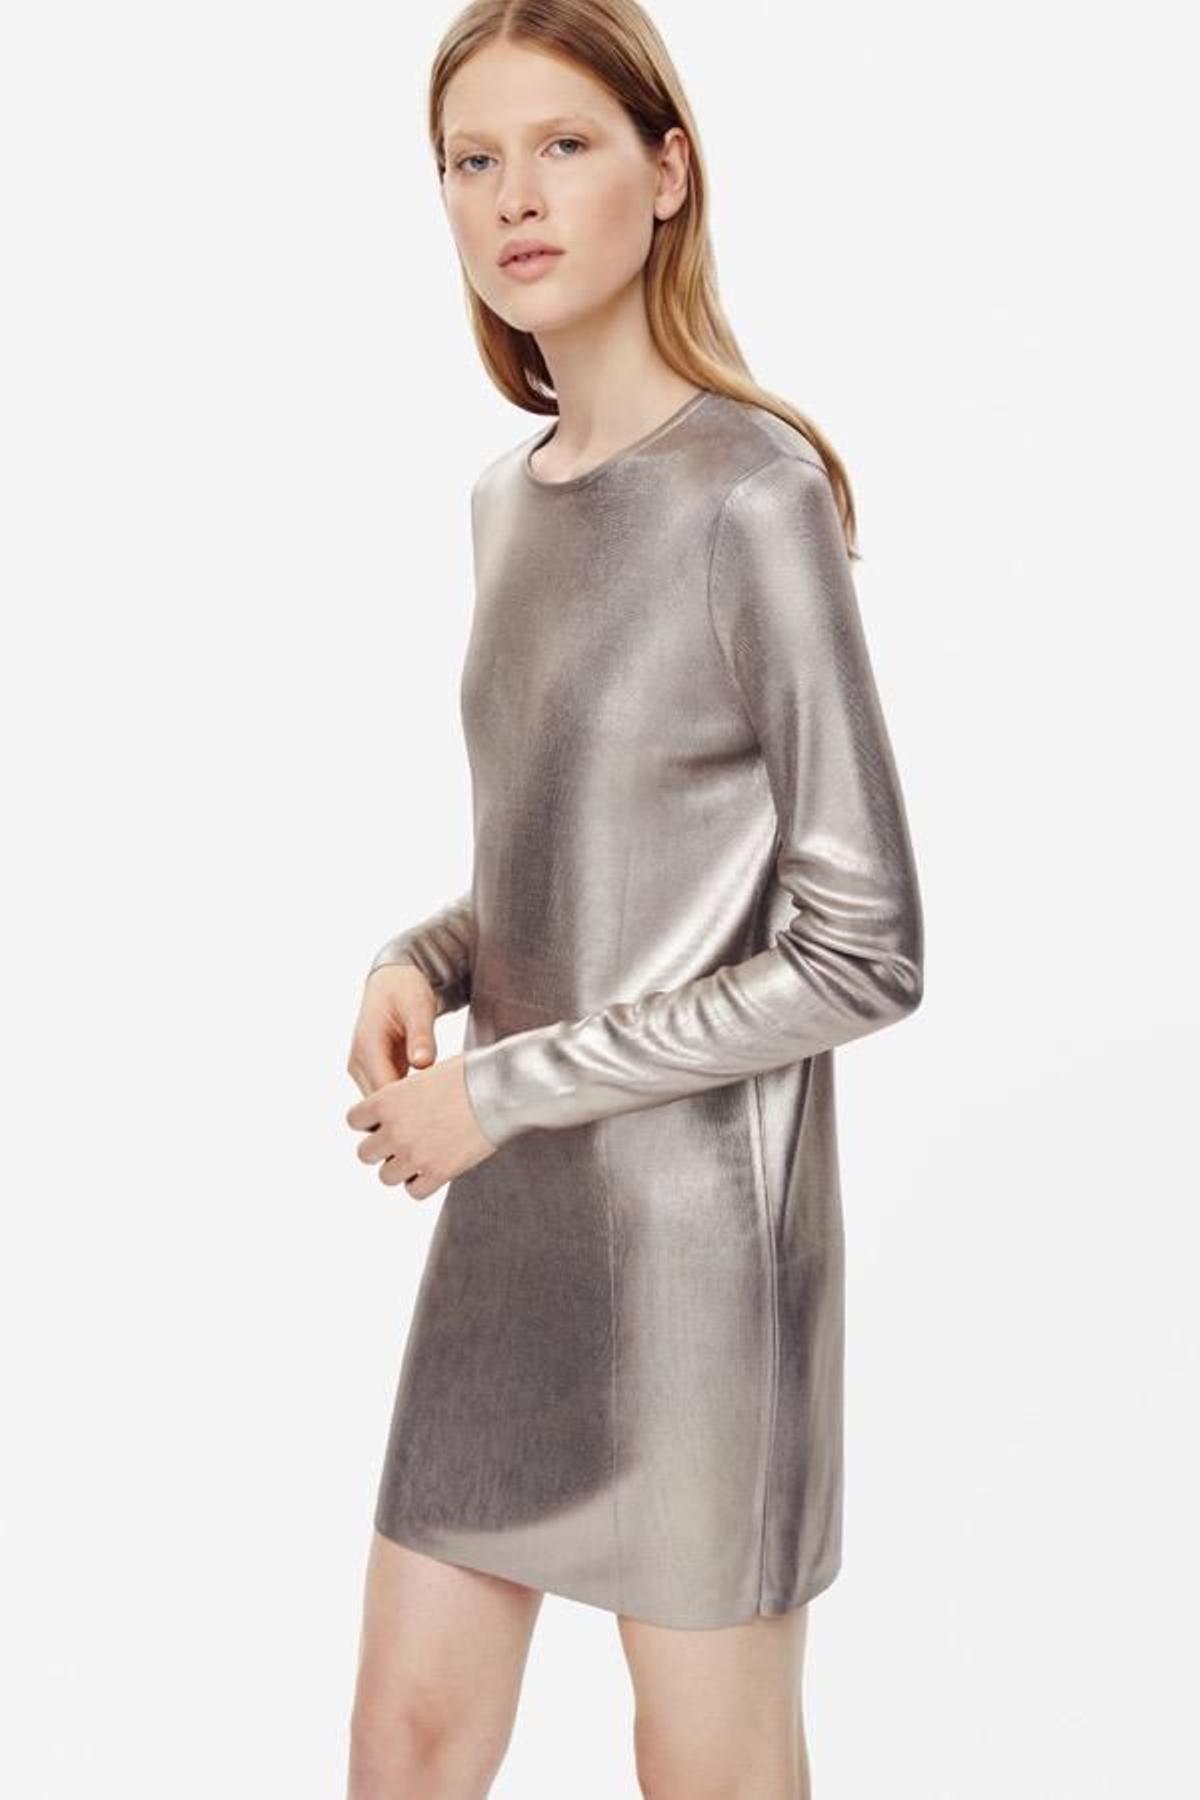 Vestido de manga larga metalizado de Cos 99€